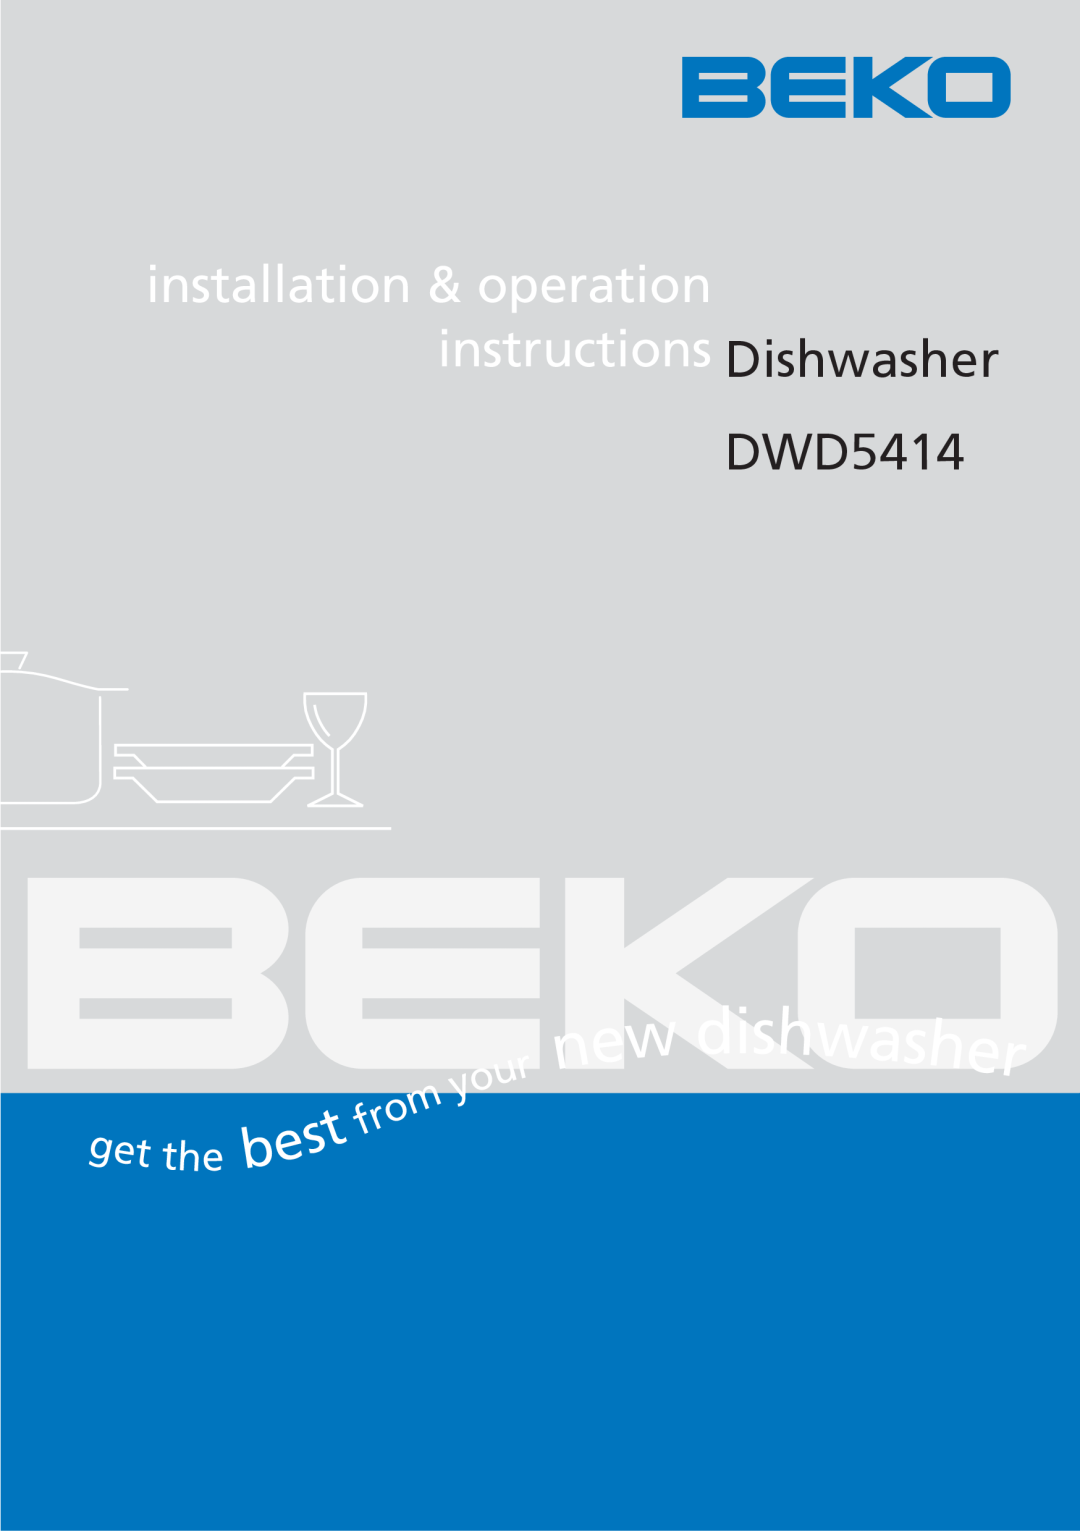 Beko DWD5414 manual dishwasher, installation & operation instructions Dishwasher 